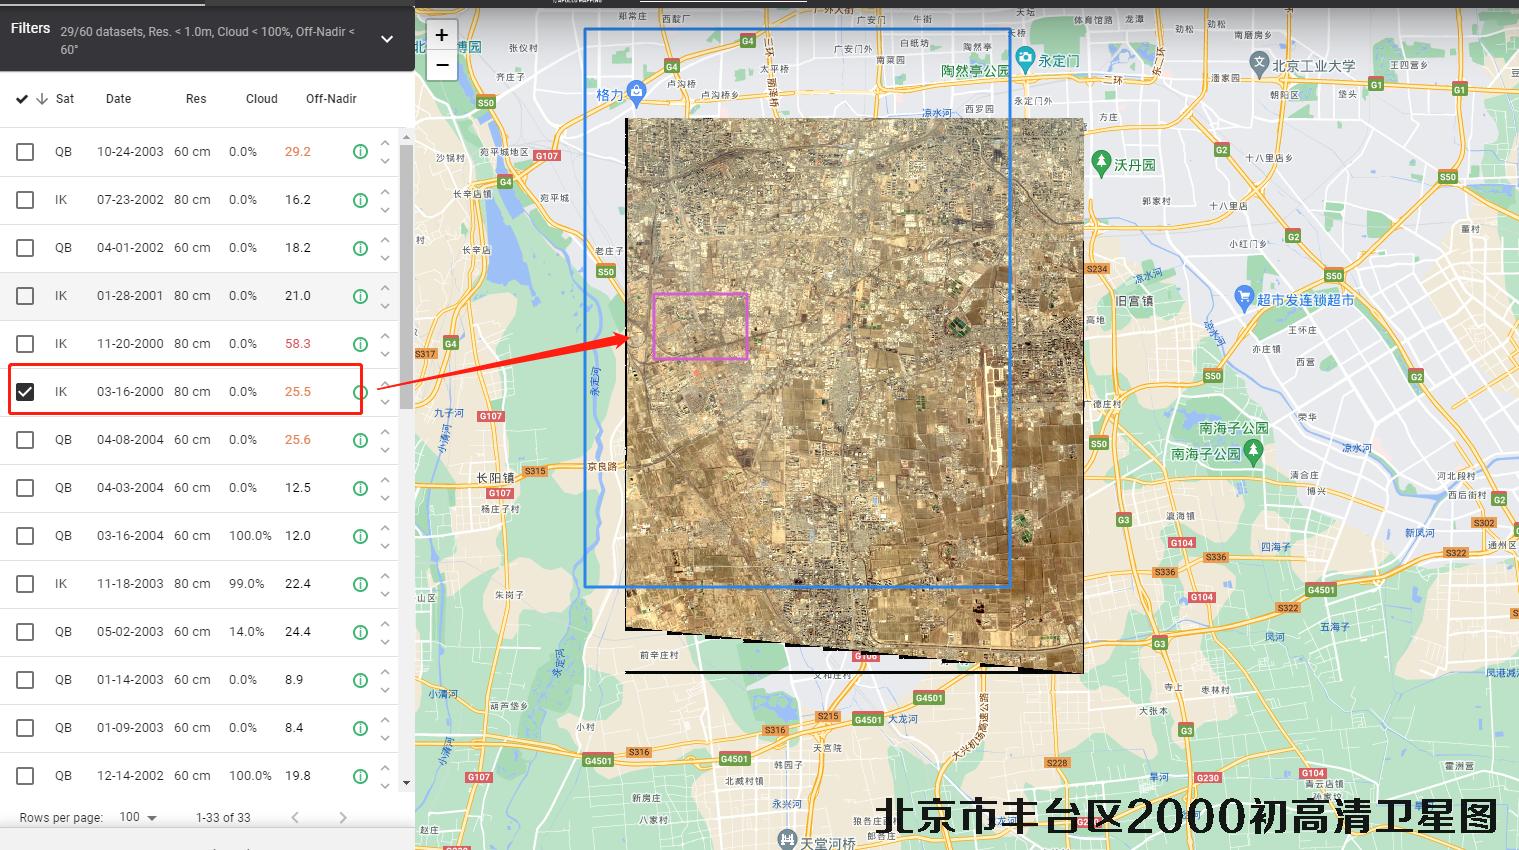 北京市丰台区2000年初高清历史卫星图